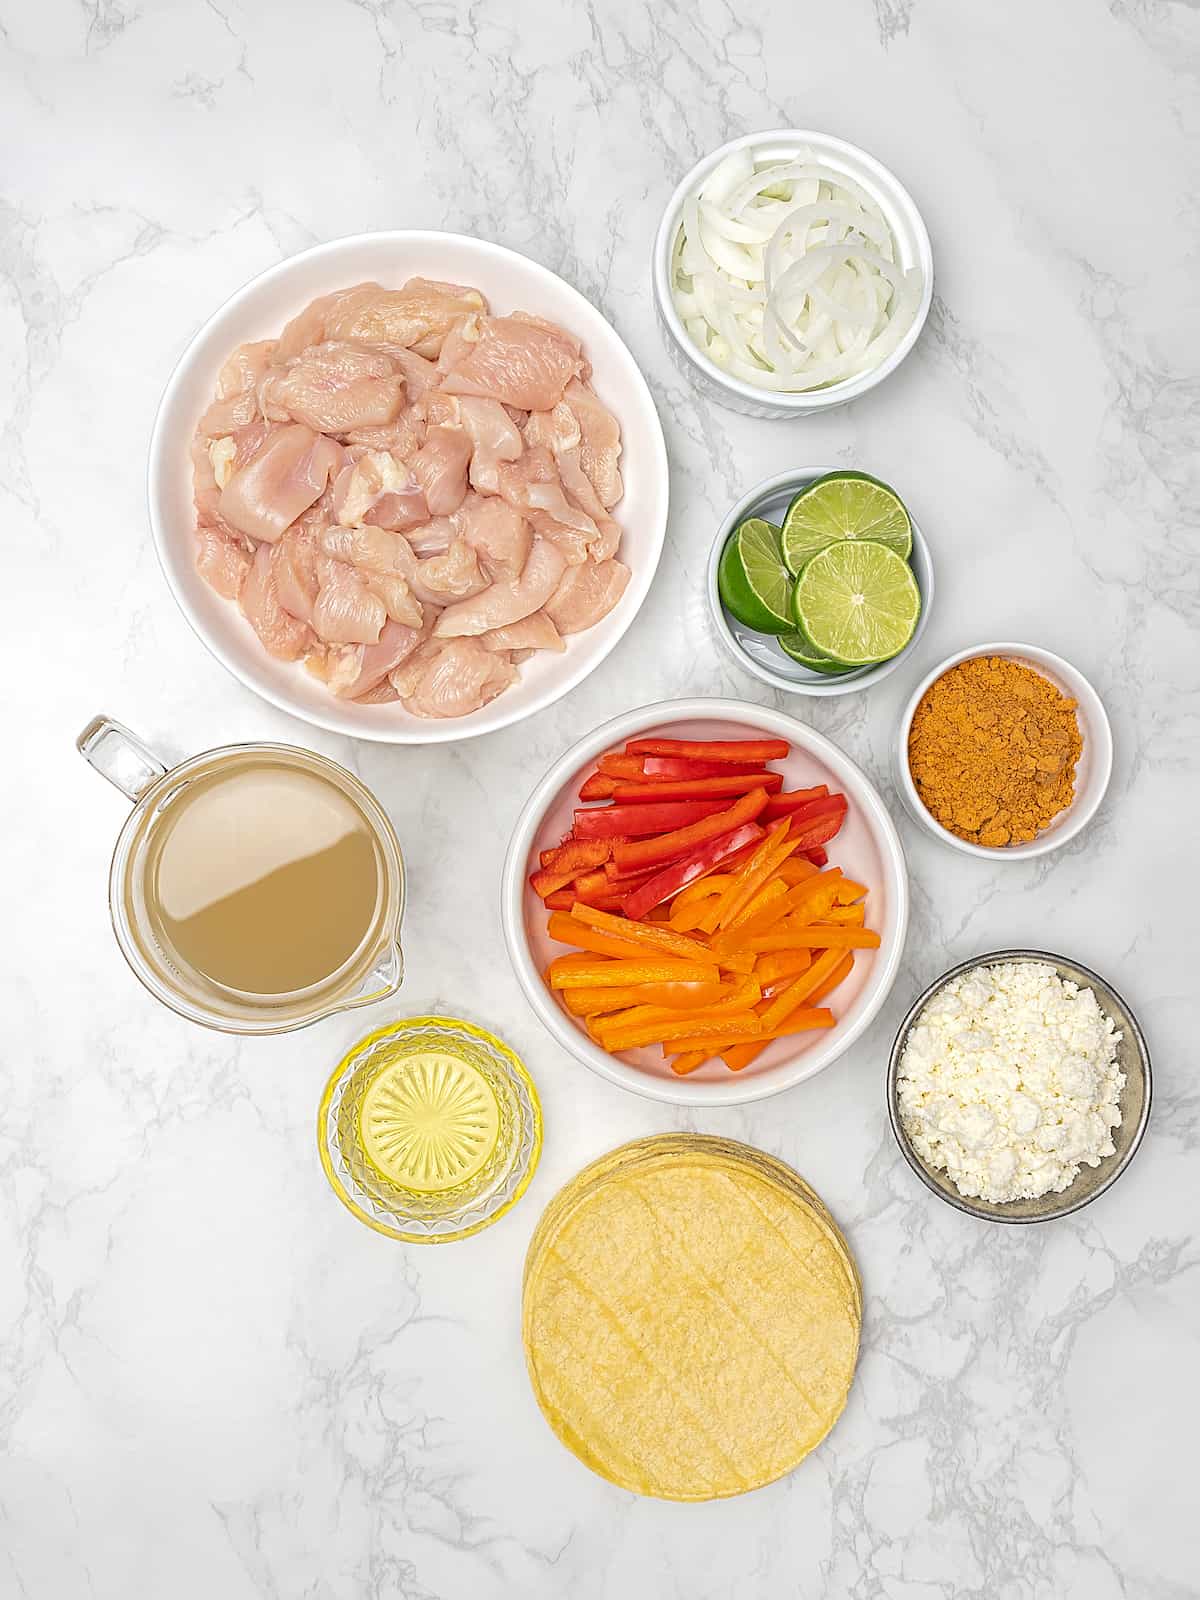 Overhead view of ingredients for Instant Pot chicken fajitas